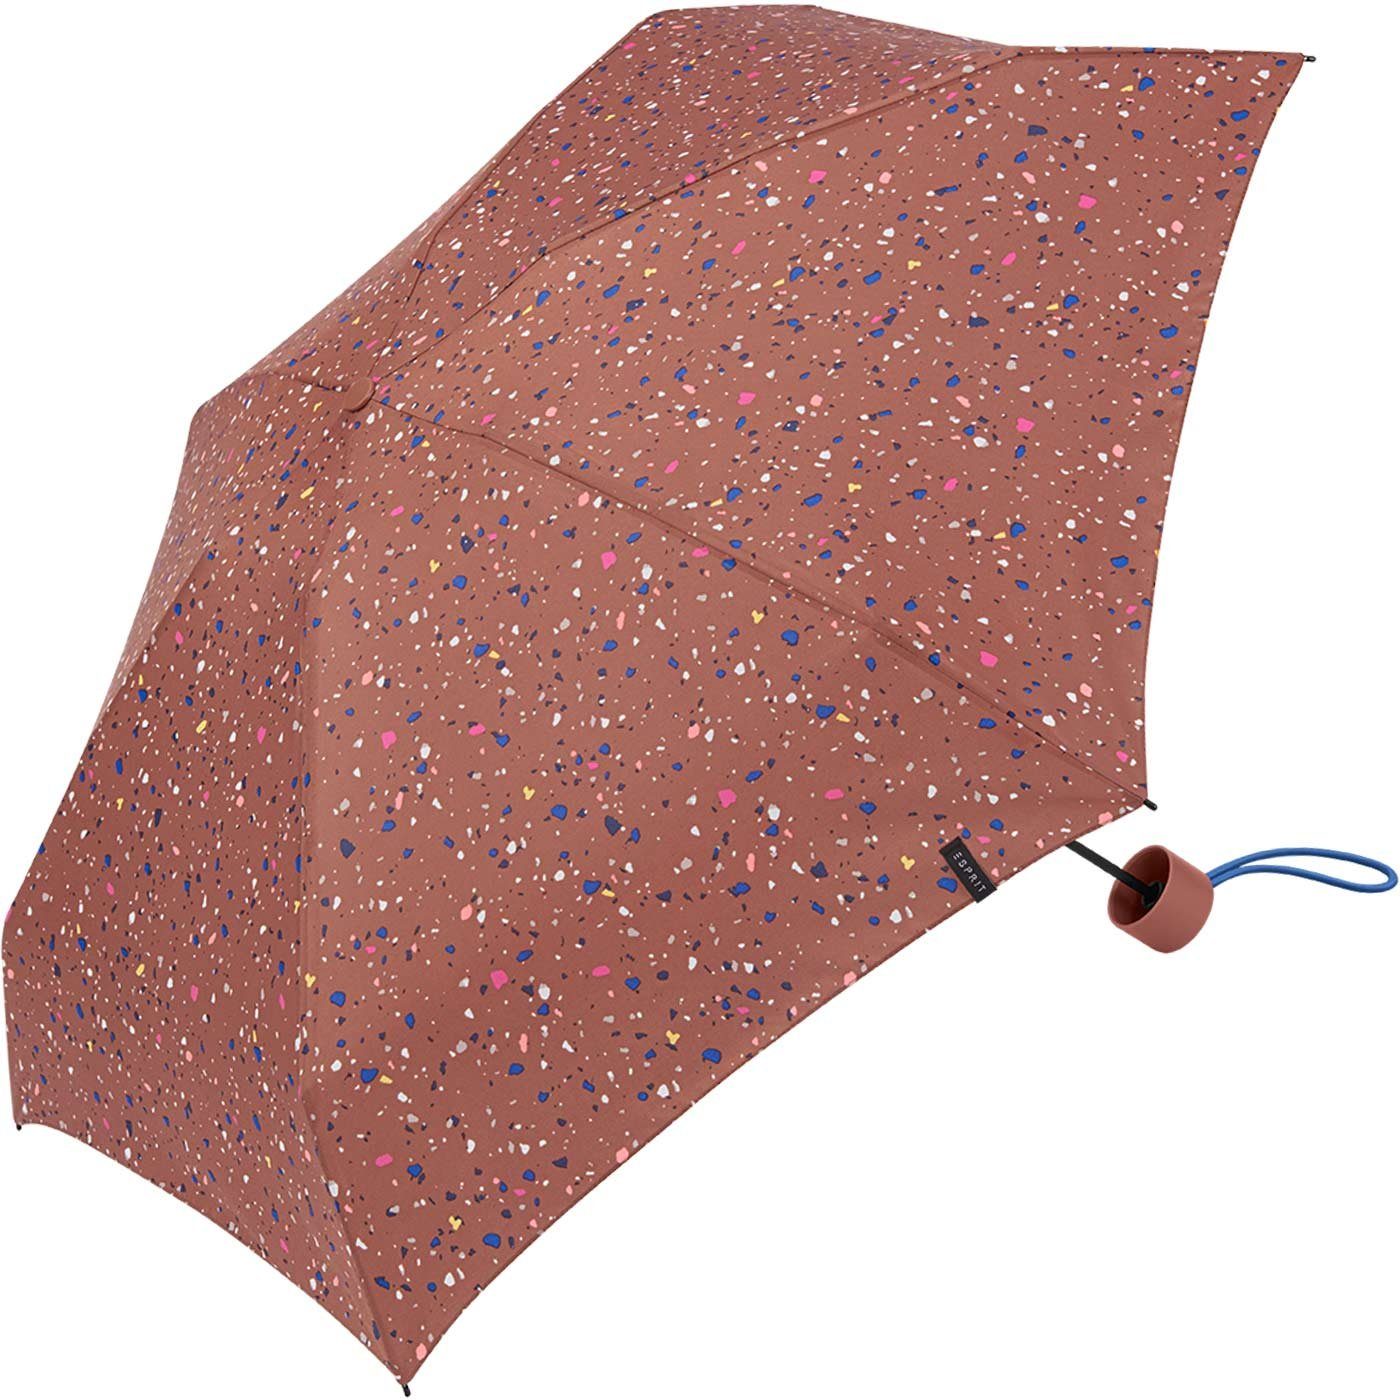 Dots klein, den - in - neuen Taschenregenschirm winzig Mini Trendfarben Esprit Regenschirm Terrazzo Petito terra,